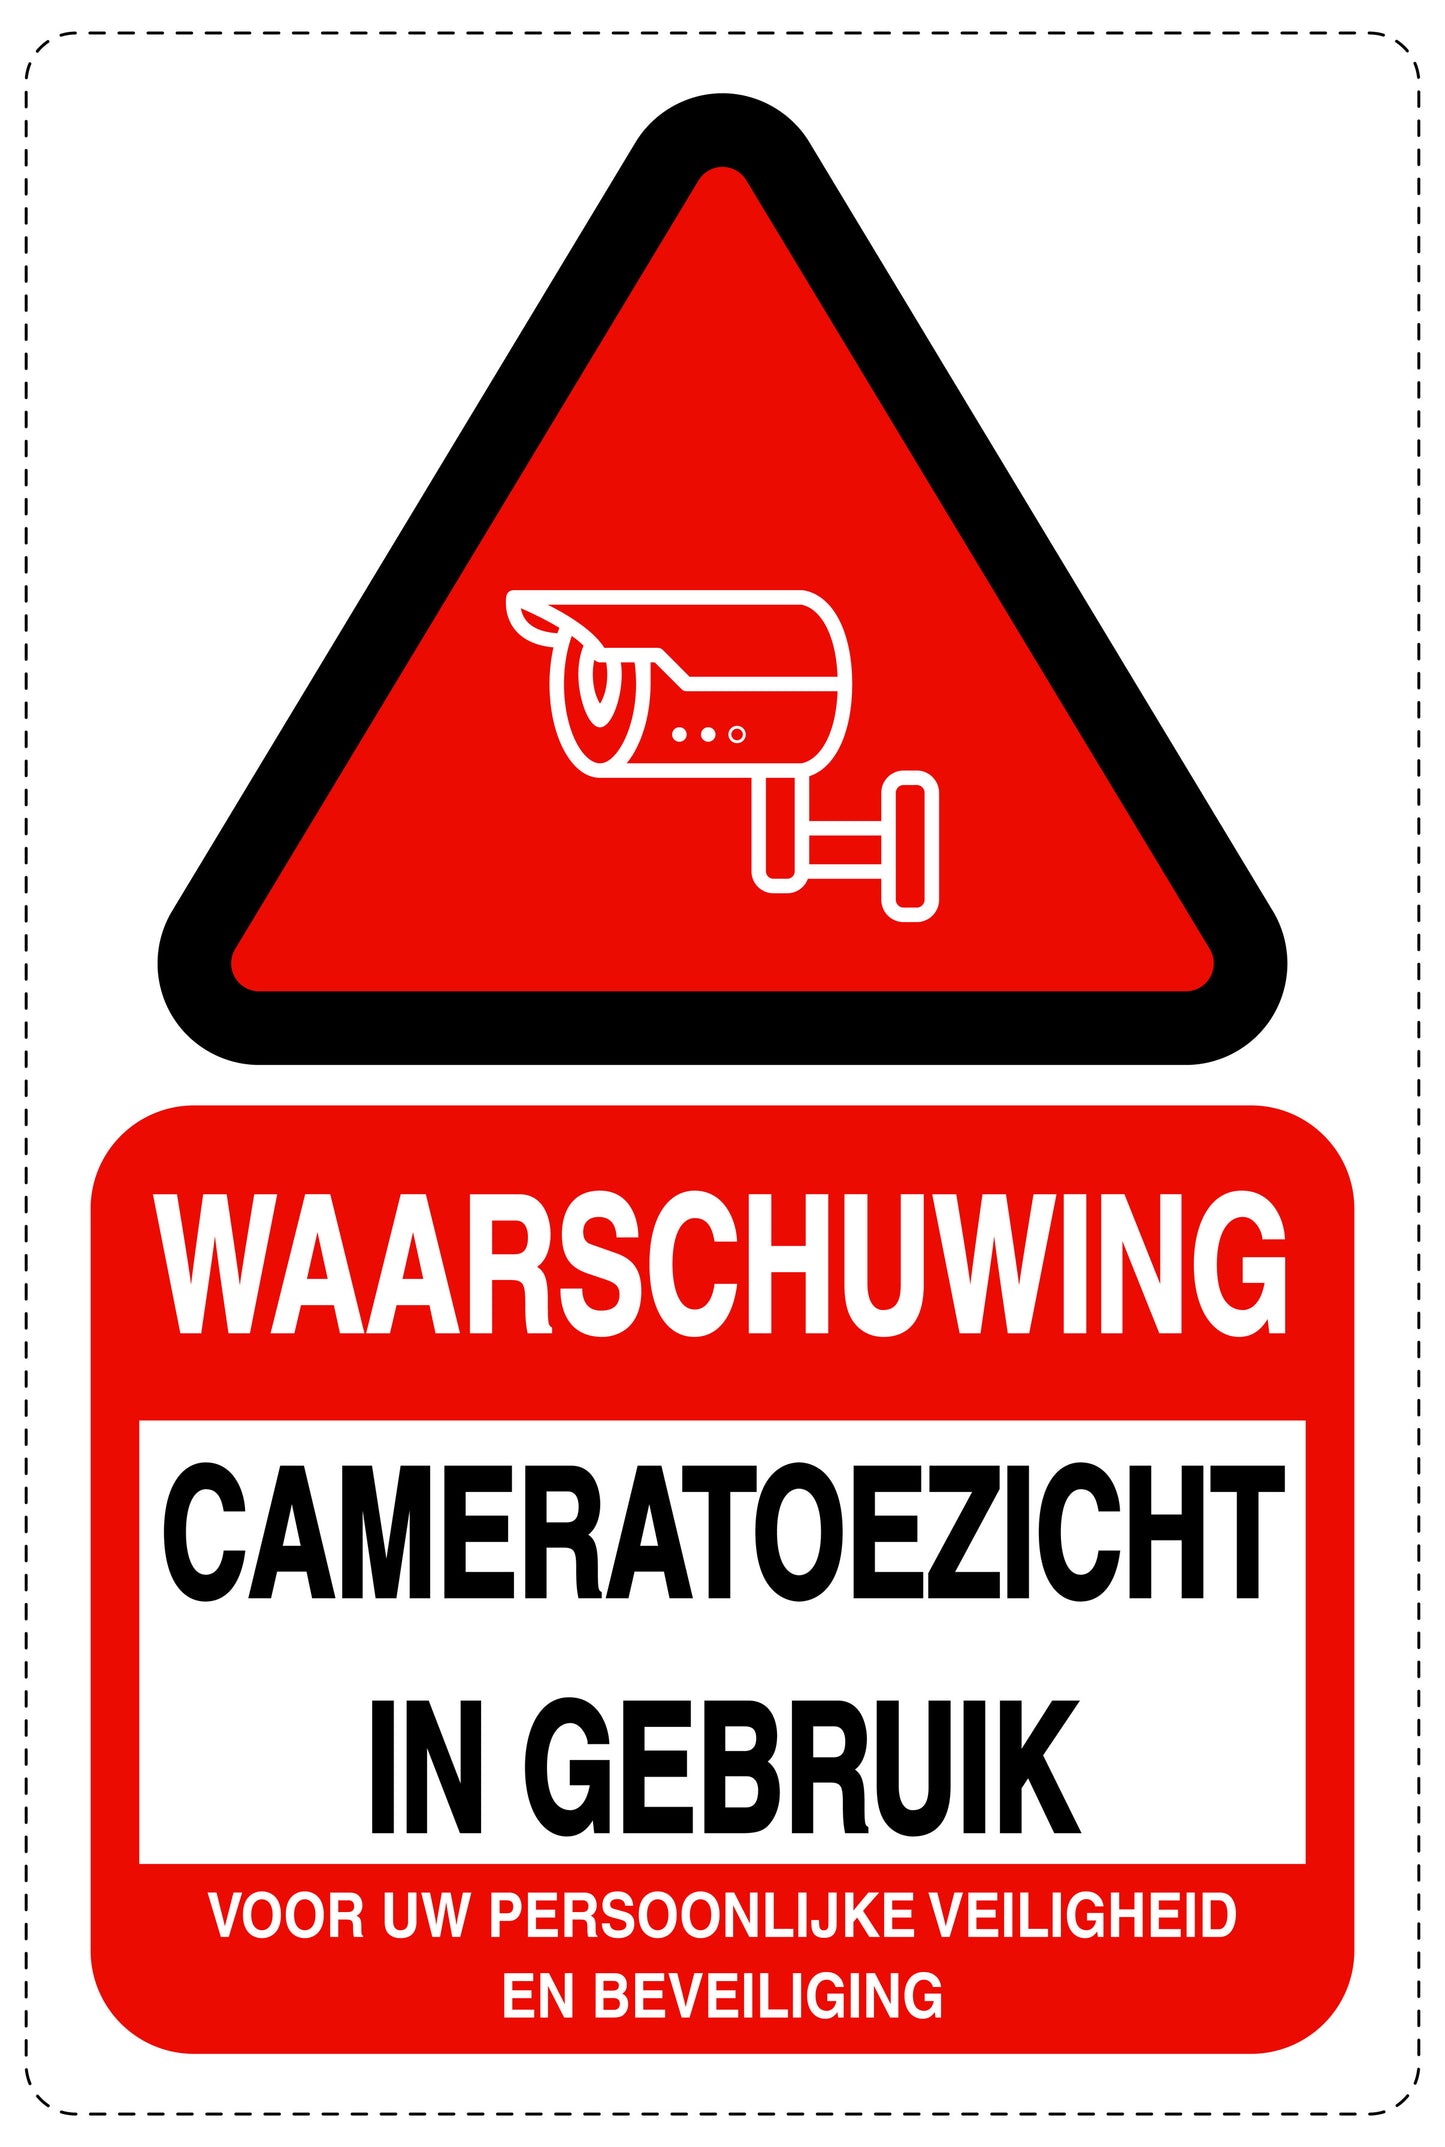 Geen toegang - videobewaking "Waarschuwing cameratoezicht in gebruik voor uw persoonlijke veiligheid en beveiliging" 10-40 cm EW-RESTRICT-2280